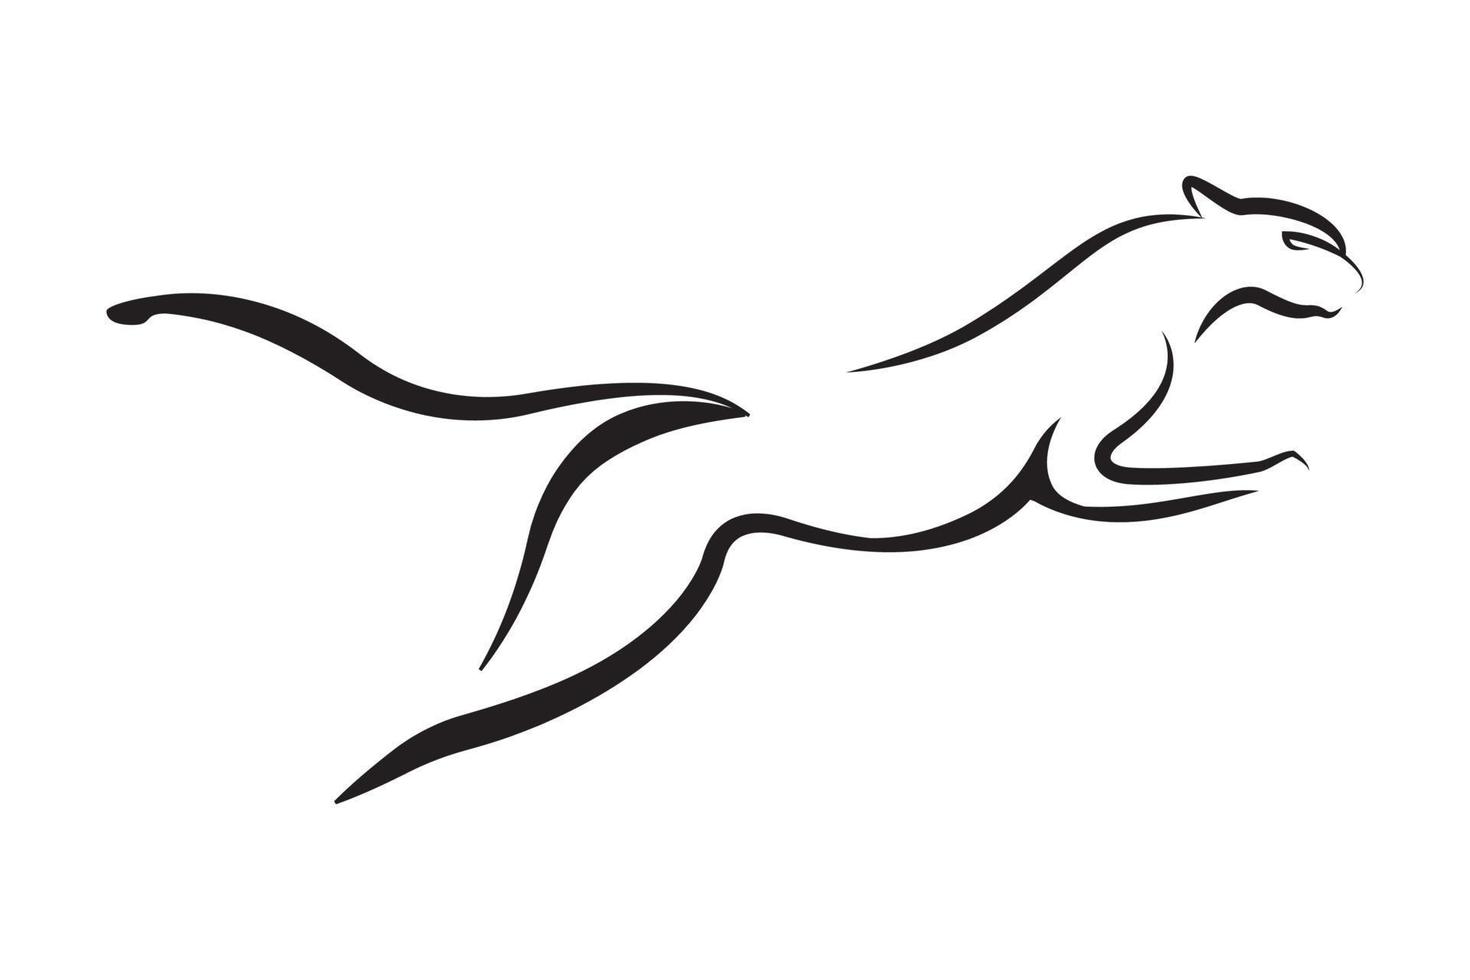 Ilustración de vector de diseño de logotipo de puma